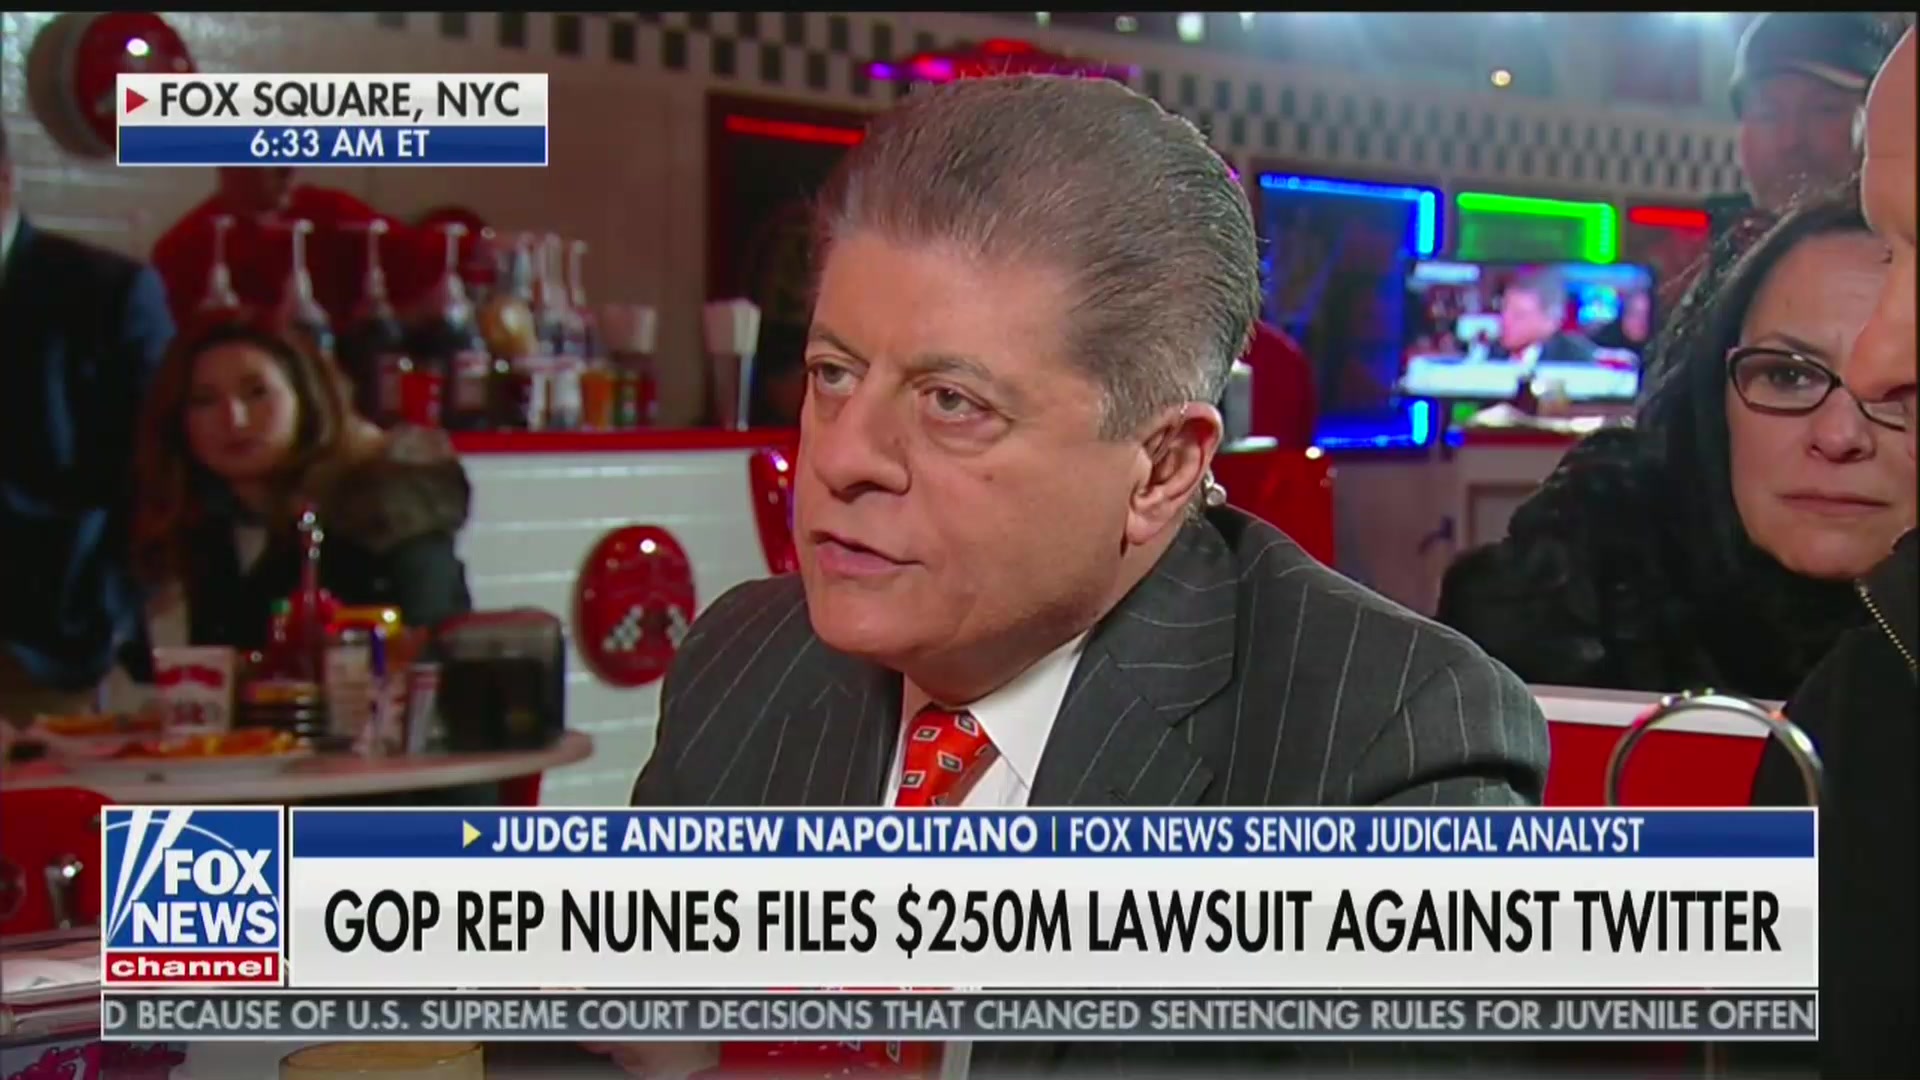 Fox News’ Judge Napolitano Dismisses Nunes Lawsuit: ‘Novel Litigation’ to Get Attention